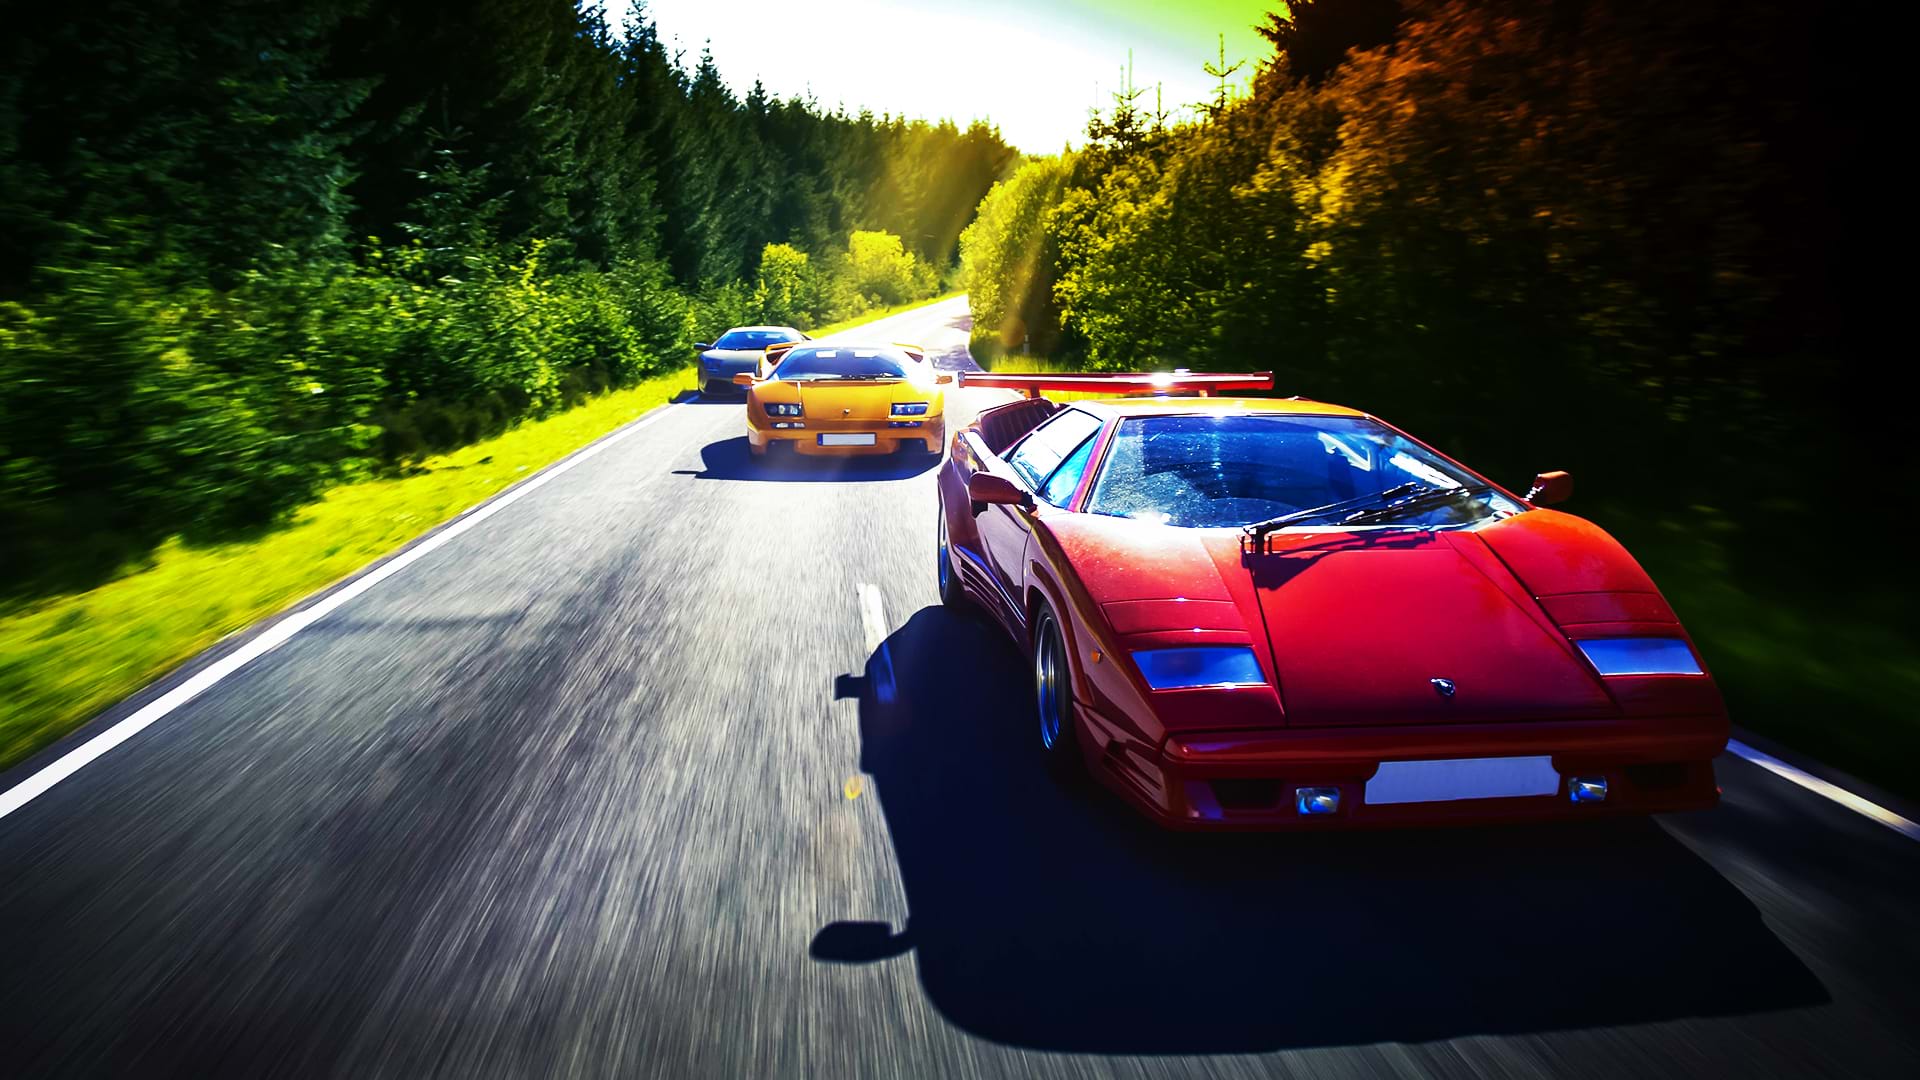 Un convoi Lamborghini coloré : Countach 25th Anniversary, Diablo 6.0 et Murciélago, court le long d'une route pittoresque par une journée ensoleillée.